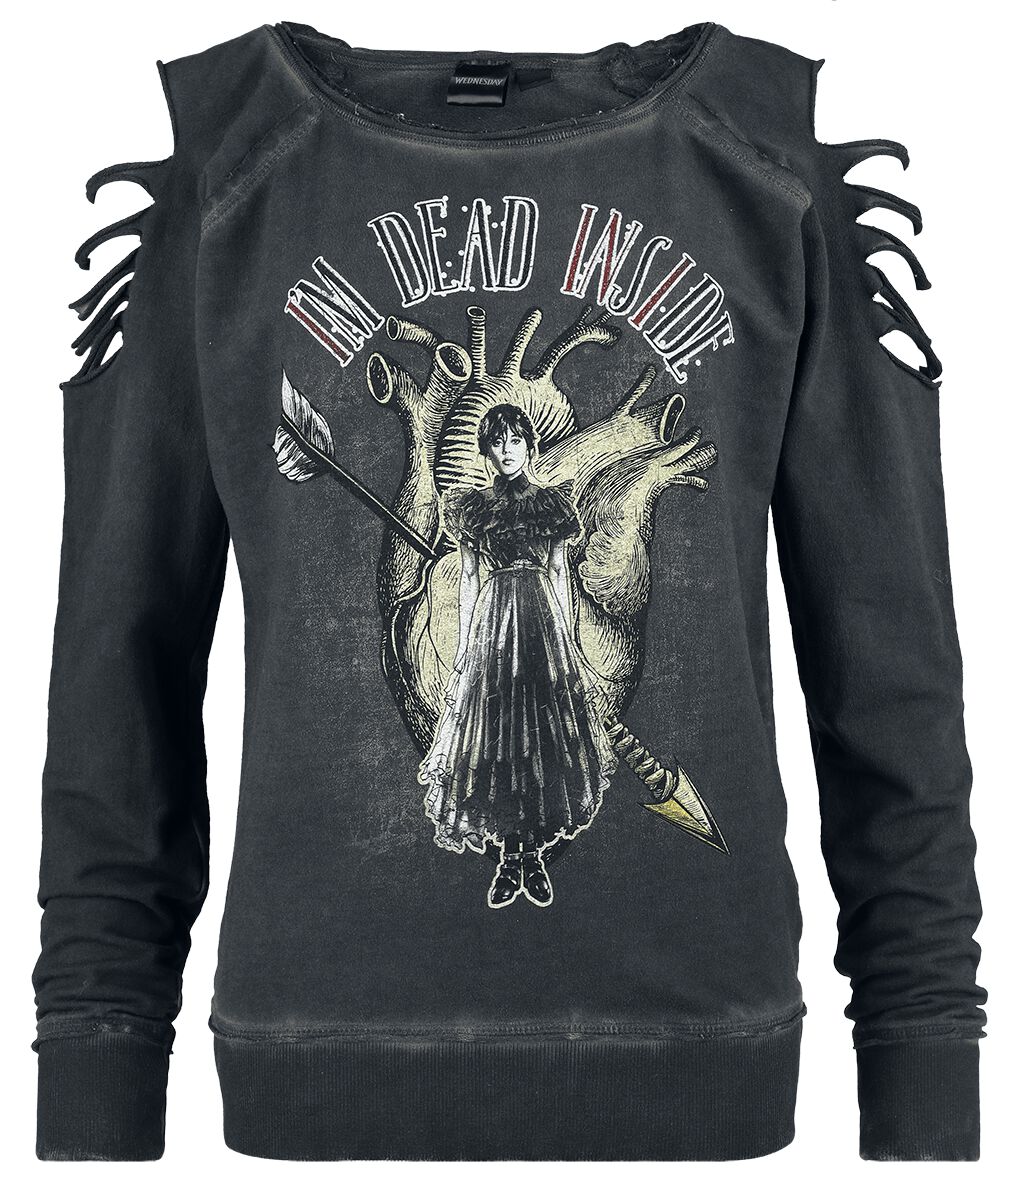 Wednesday Sweatshirt - I`m dead inside - S bis XXL - für Damen - Größe XL - dunkelgrau  - EMP exklusives Merchandise!